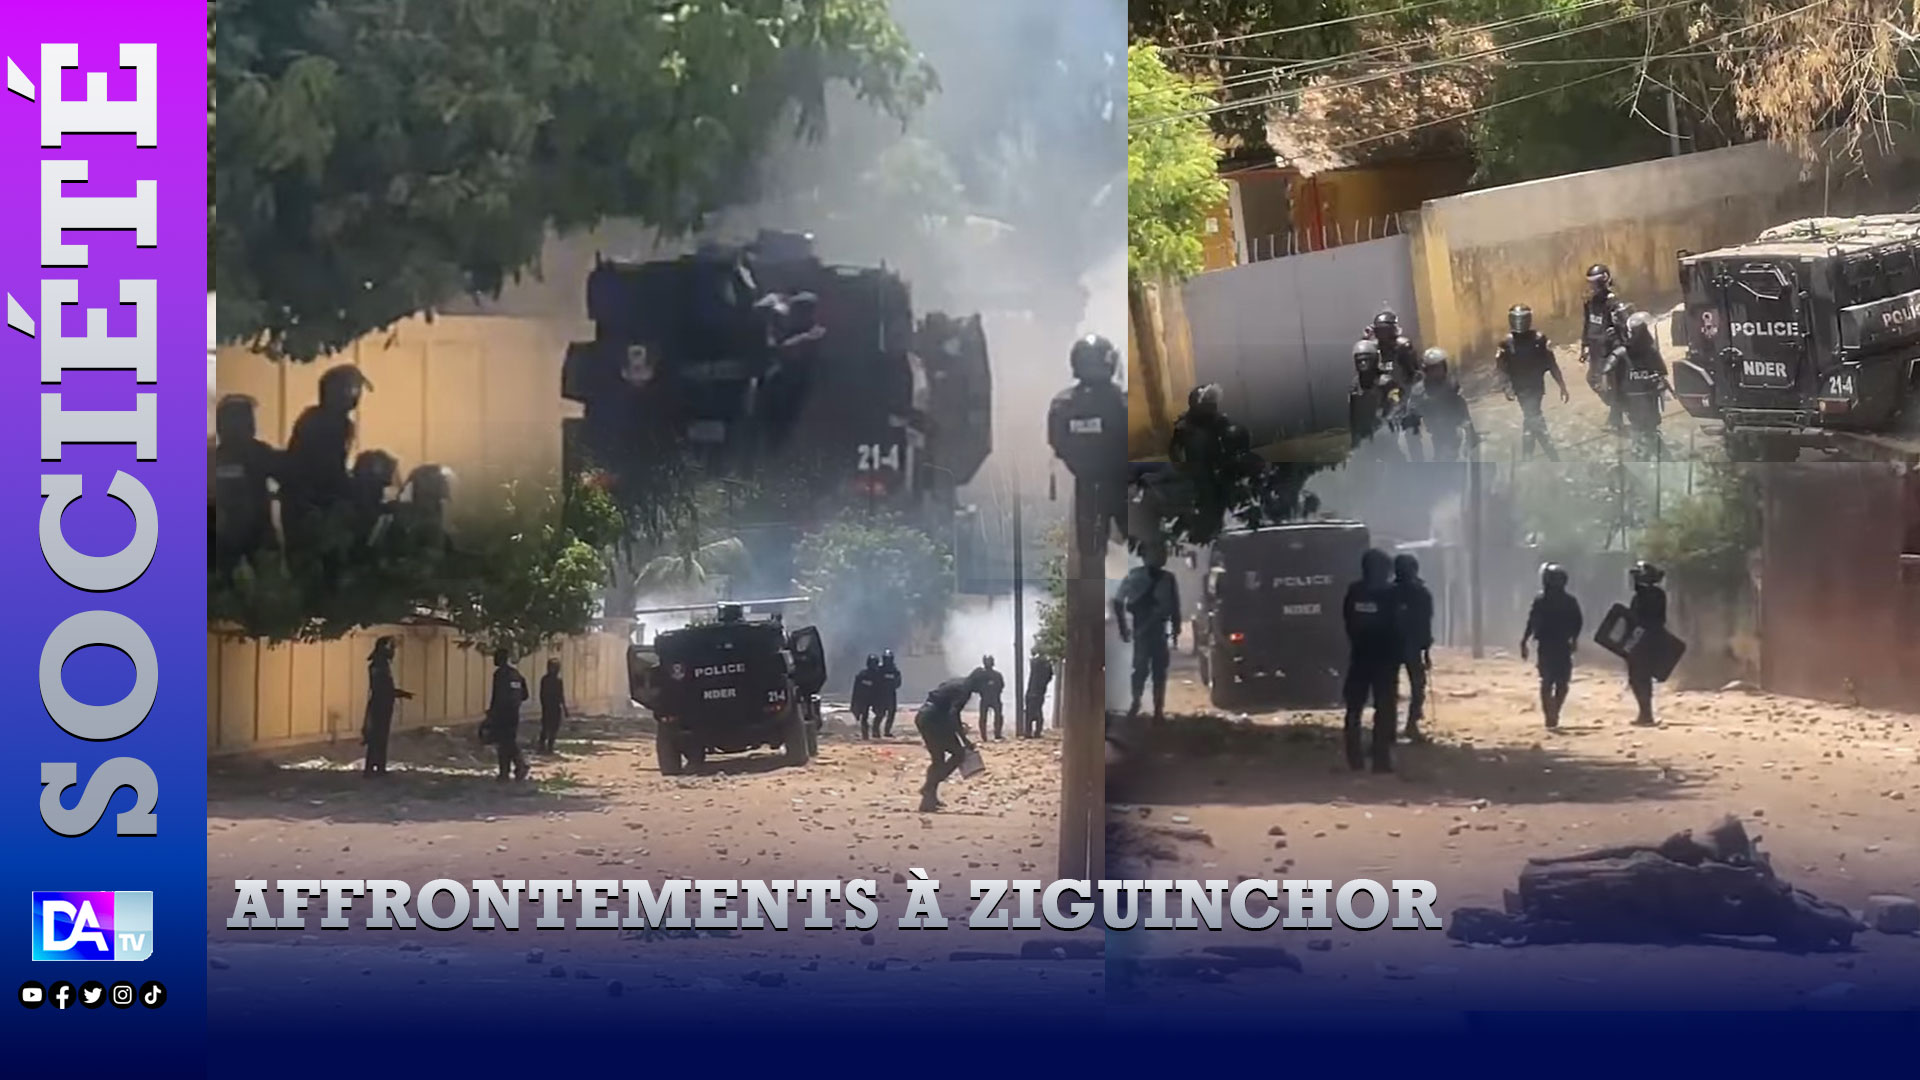 Affrontements à Ziguinchor: Un véhicule blindé de la police fait marche arrière et tue par accident 1 policier.